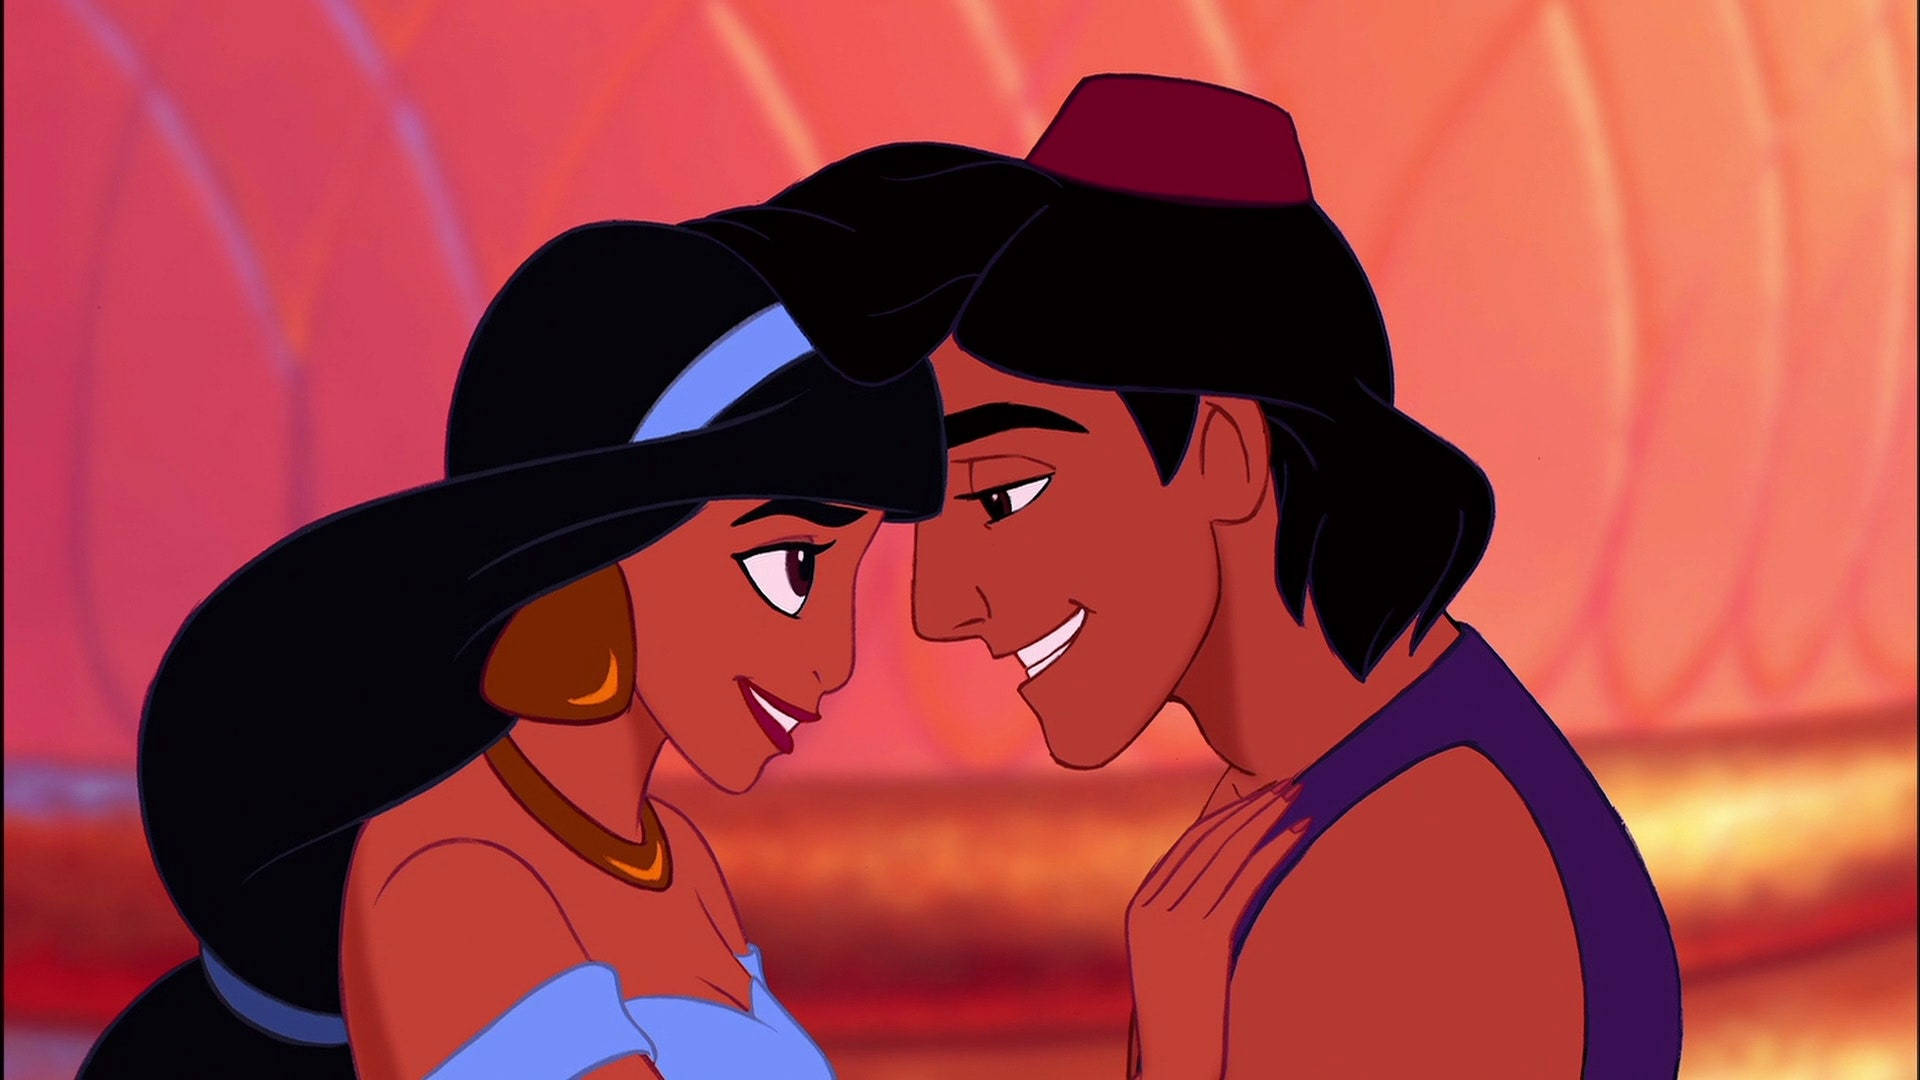 Disney Princess Jasmine With Aladdin